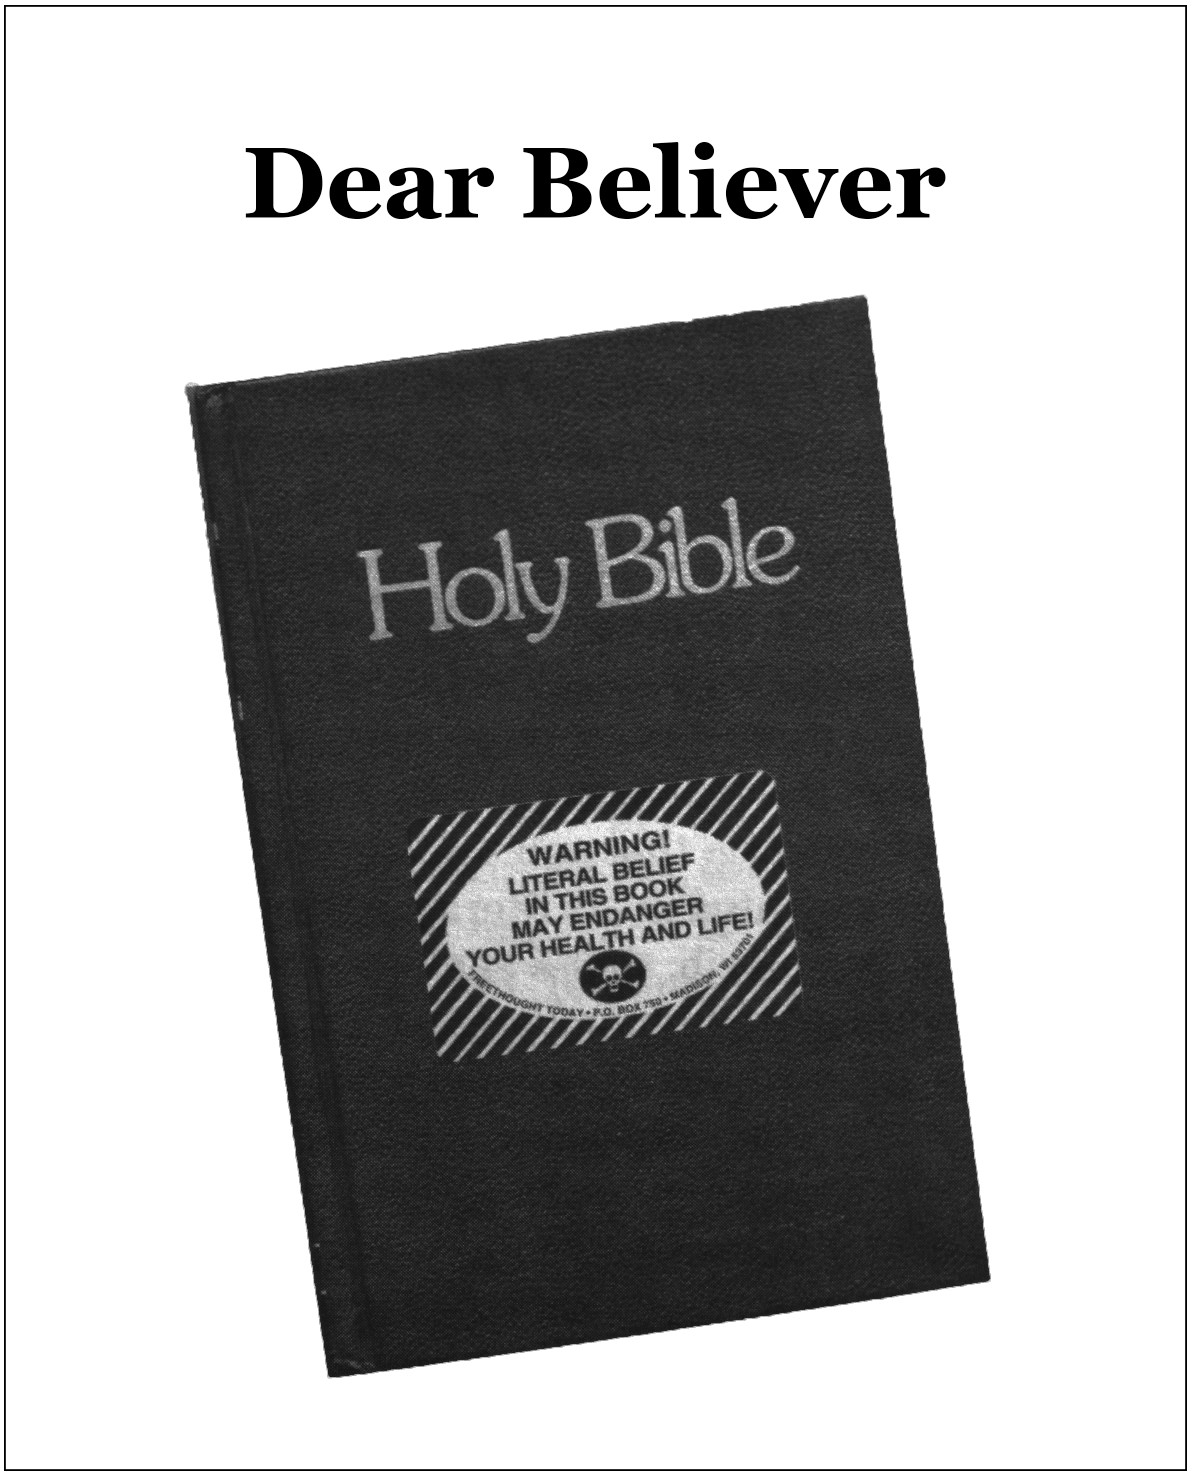 Dear Believer